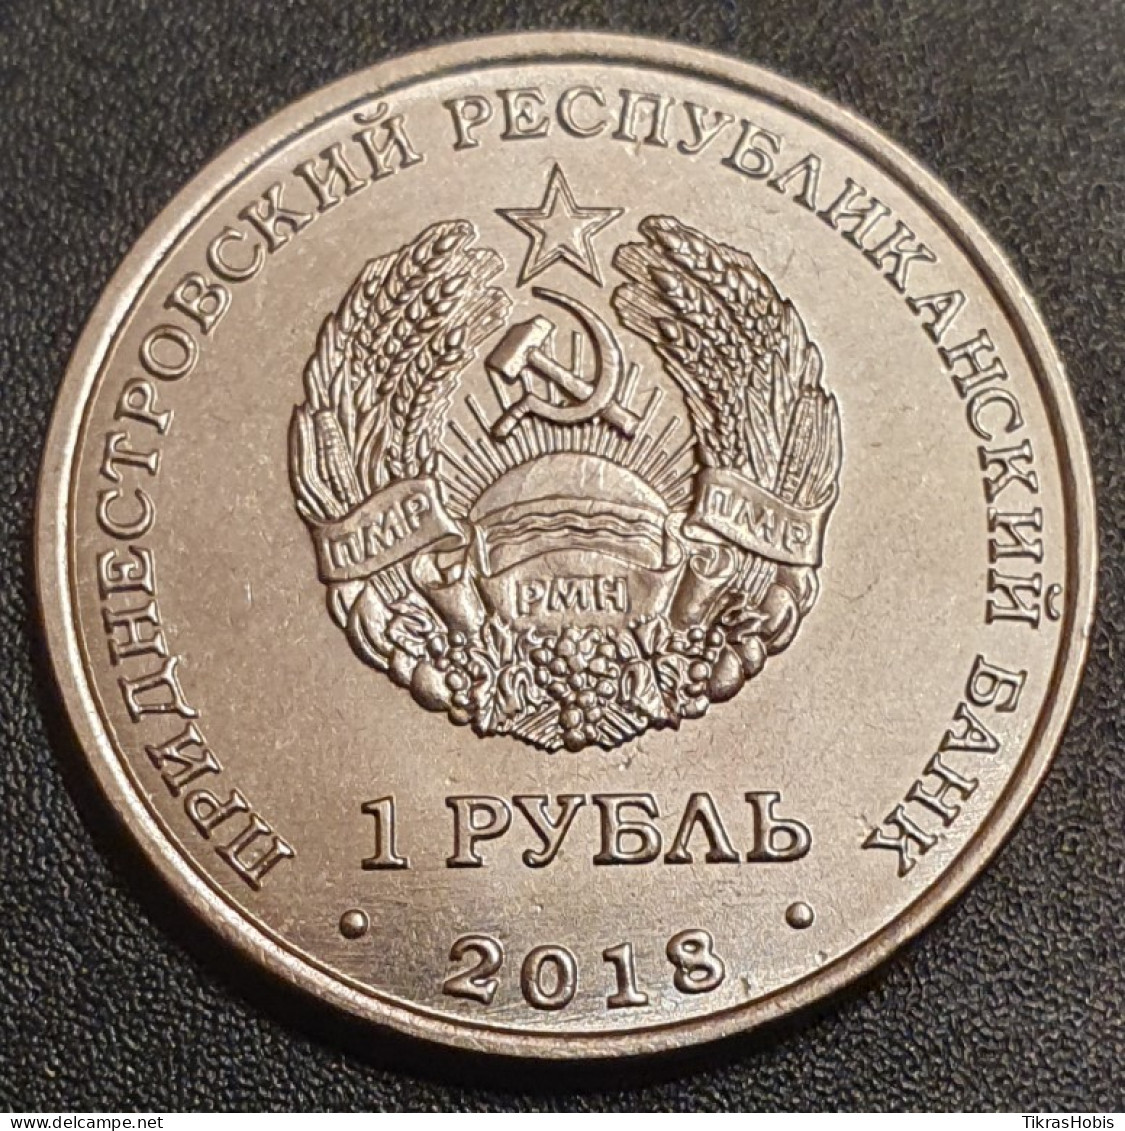 Moldova, Transnistria 1 Ruble, 2018 Boar Year UC176 - Moldawien (Moldau)